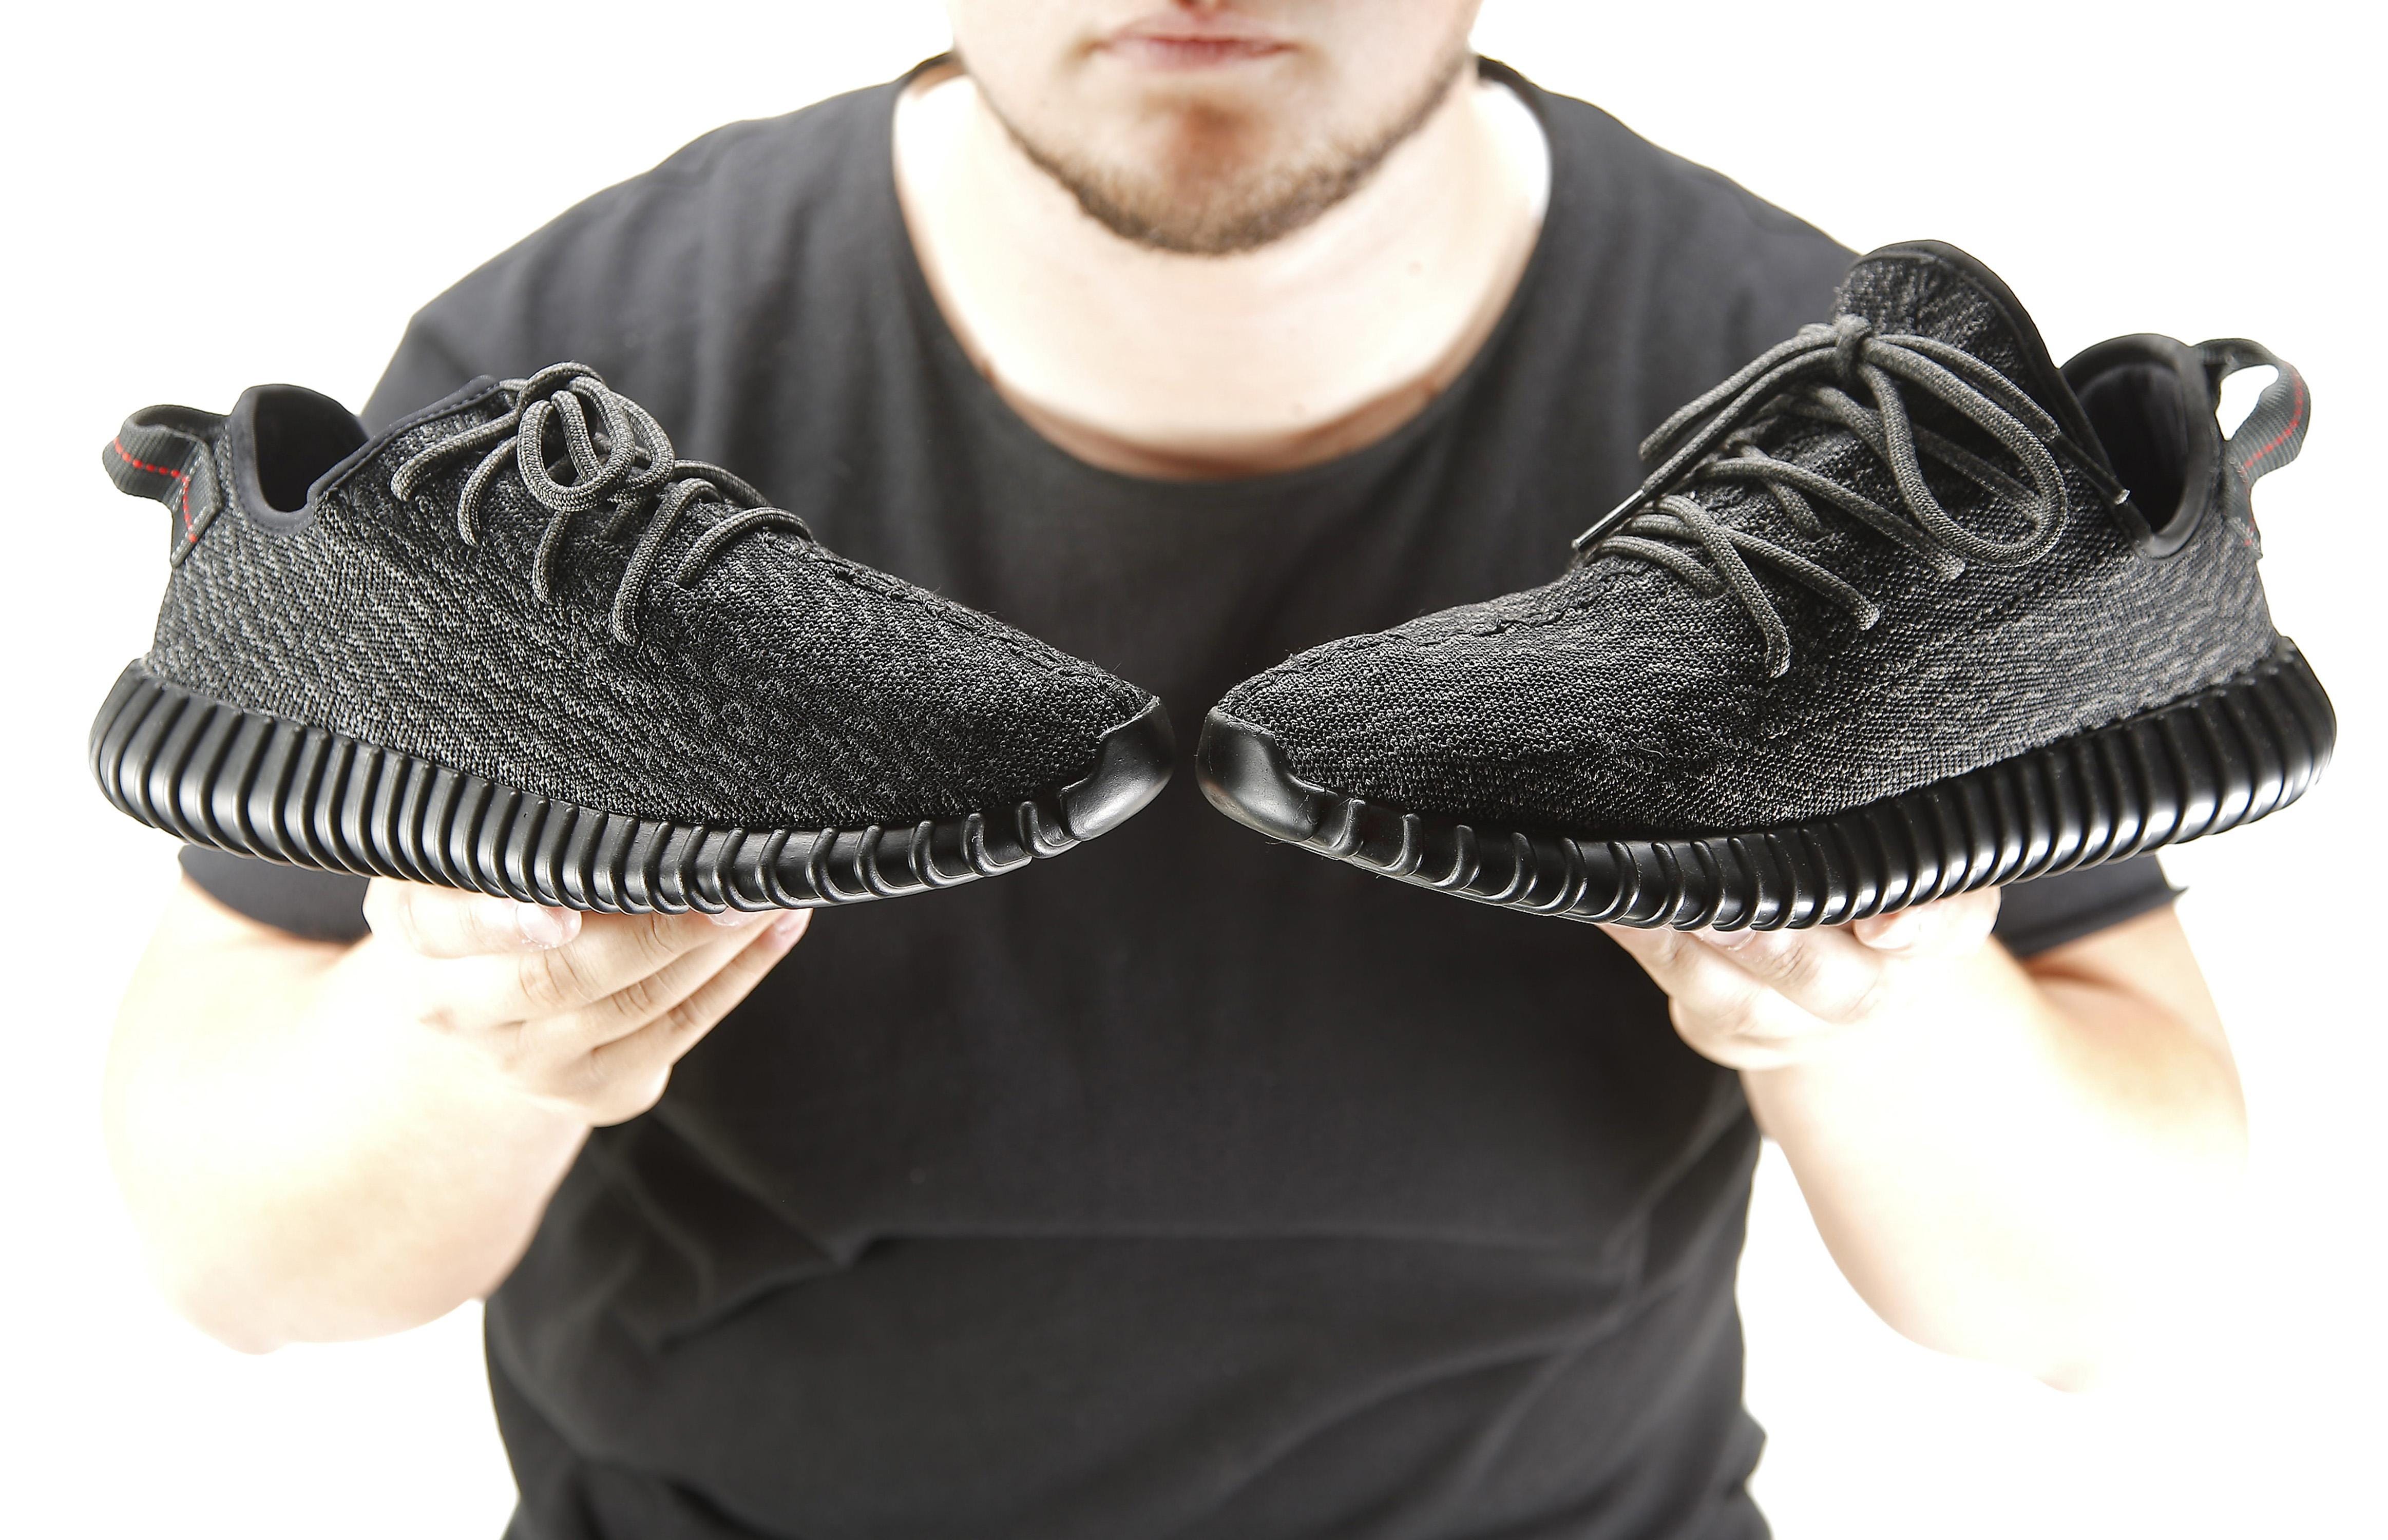 Knockoff sneakers gain footing on black 